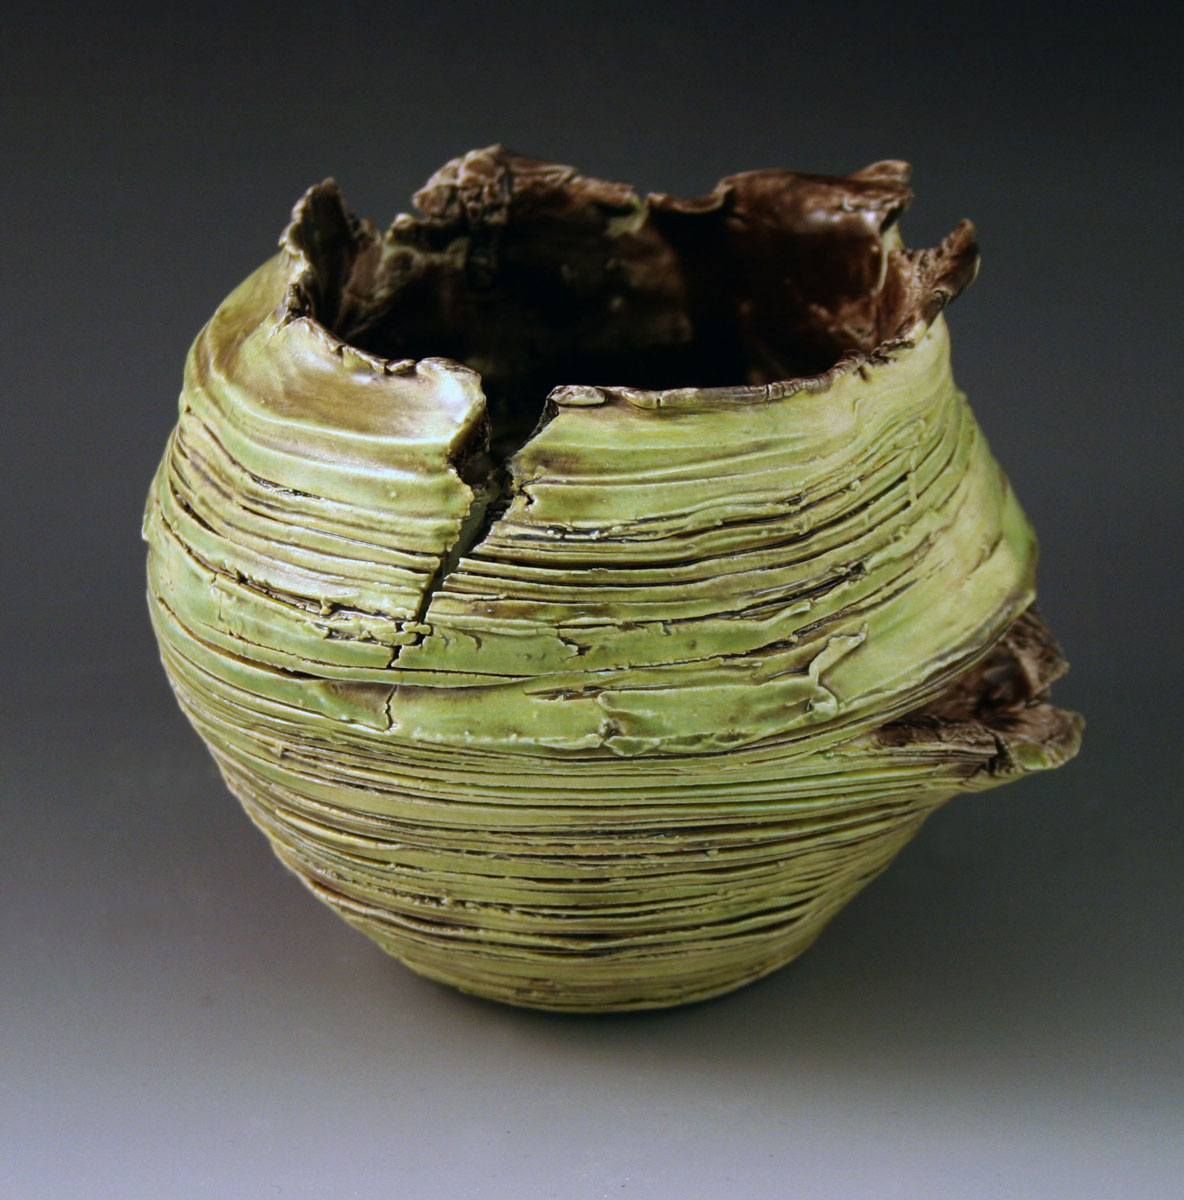 Ceramic bowl.